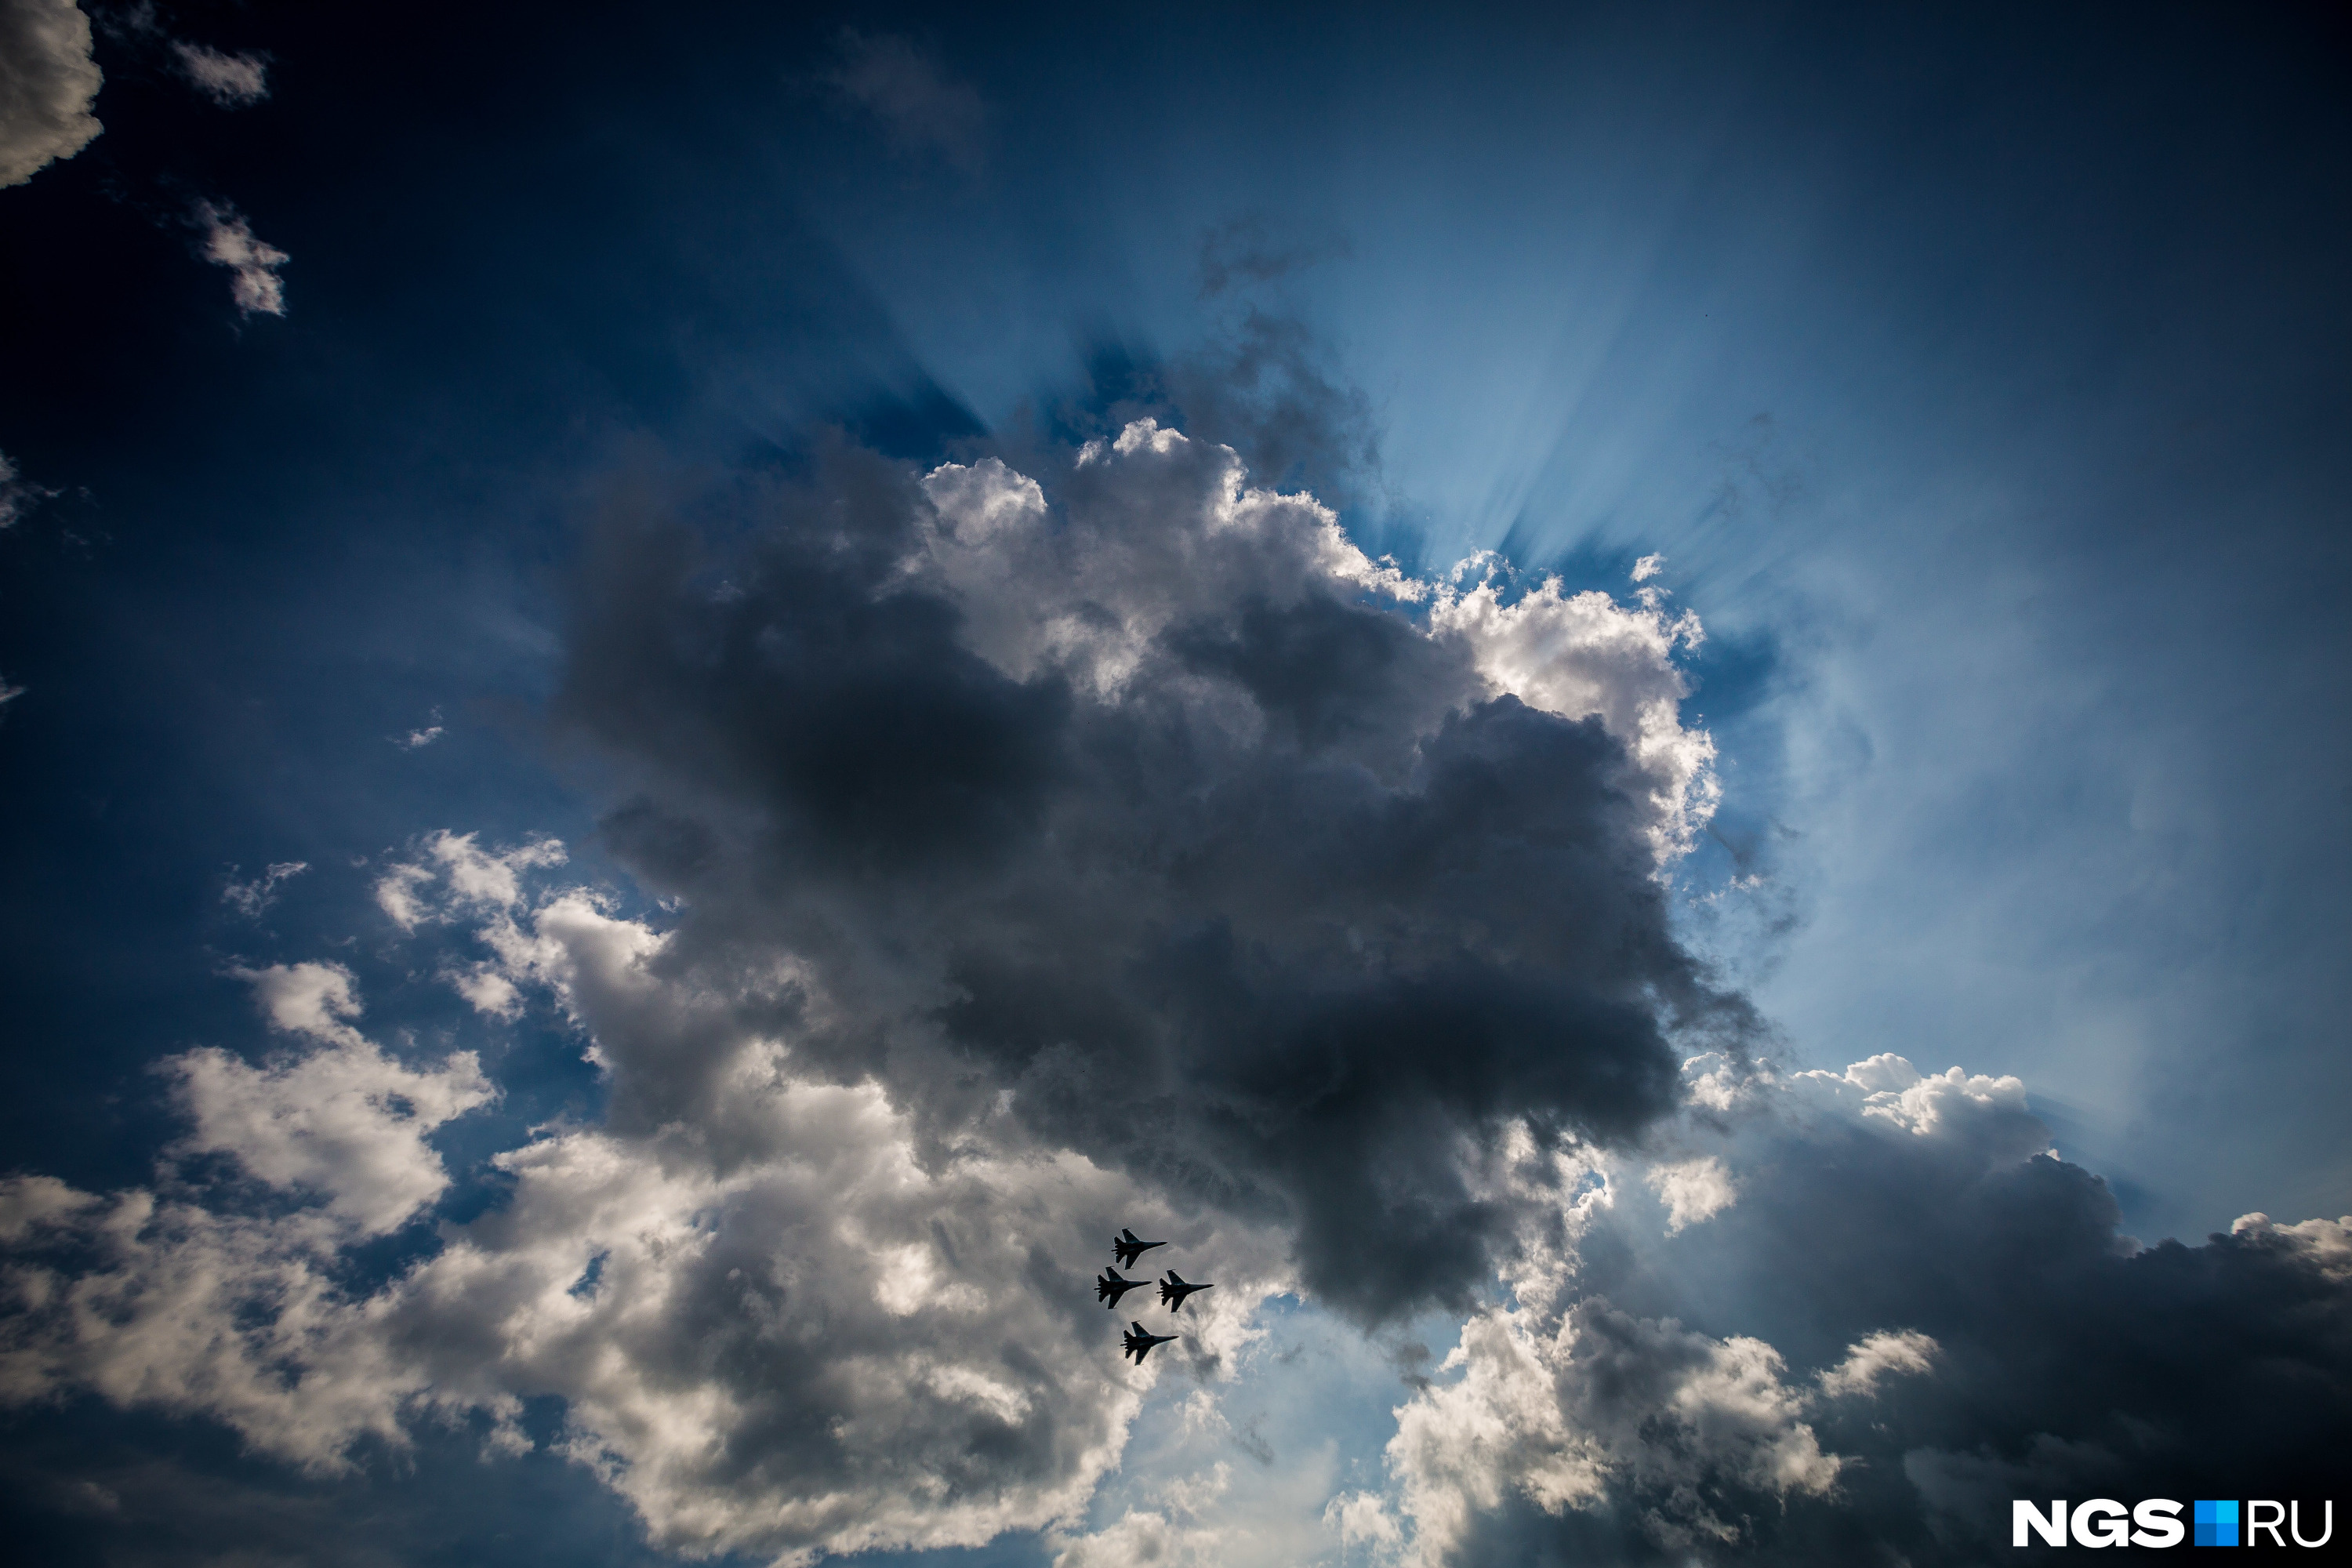 «Соколы» — единственная пилотажная группа, которая демонстрирует элементы ближнего воздушного боя на малых высотах<br>